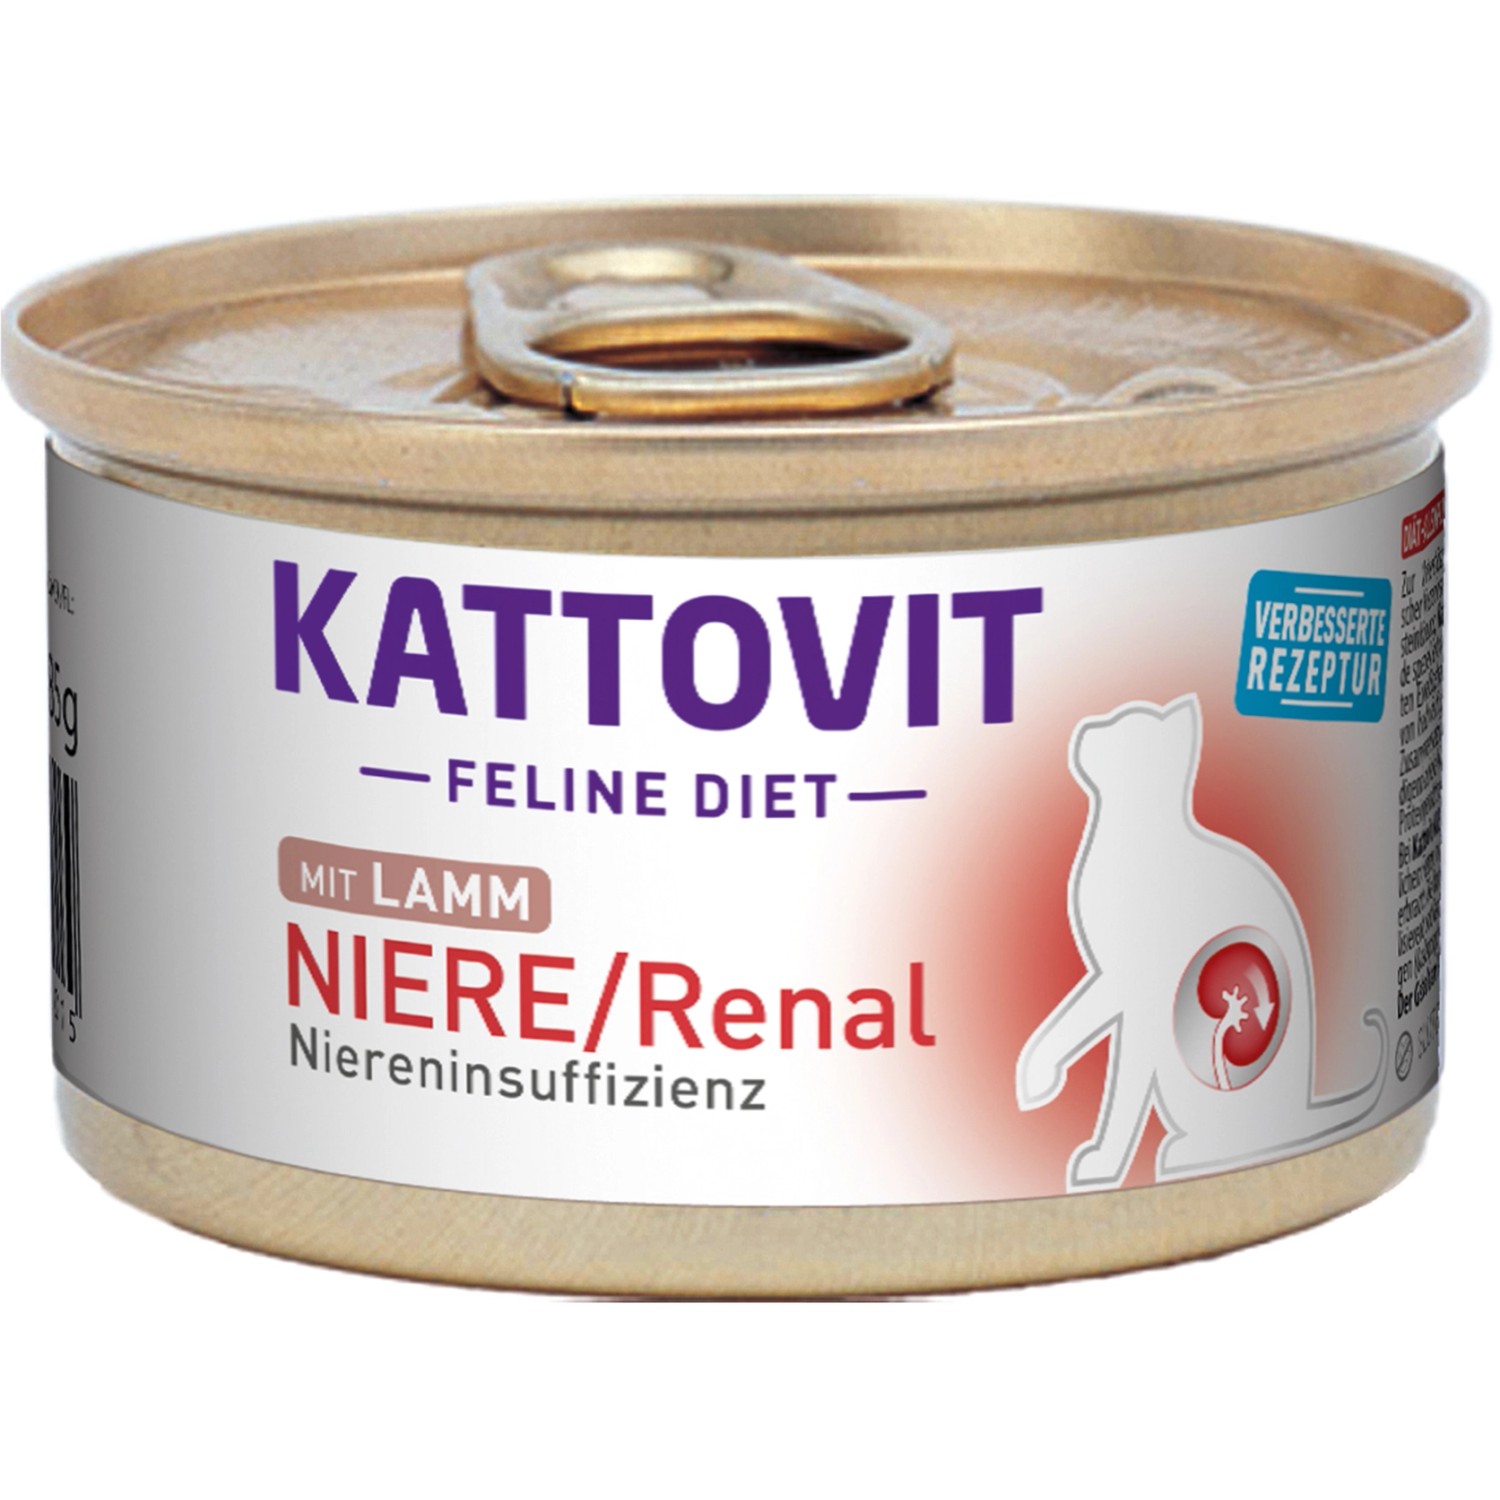 Kattovit Spezialfutter für Katzen Niere/Renal mit Lamm 85 g